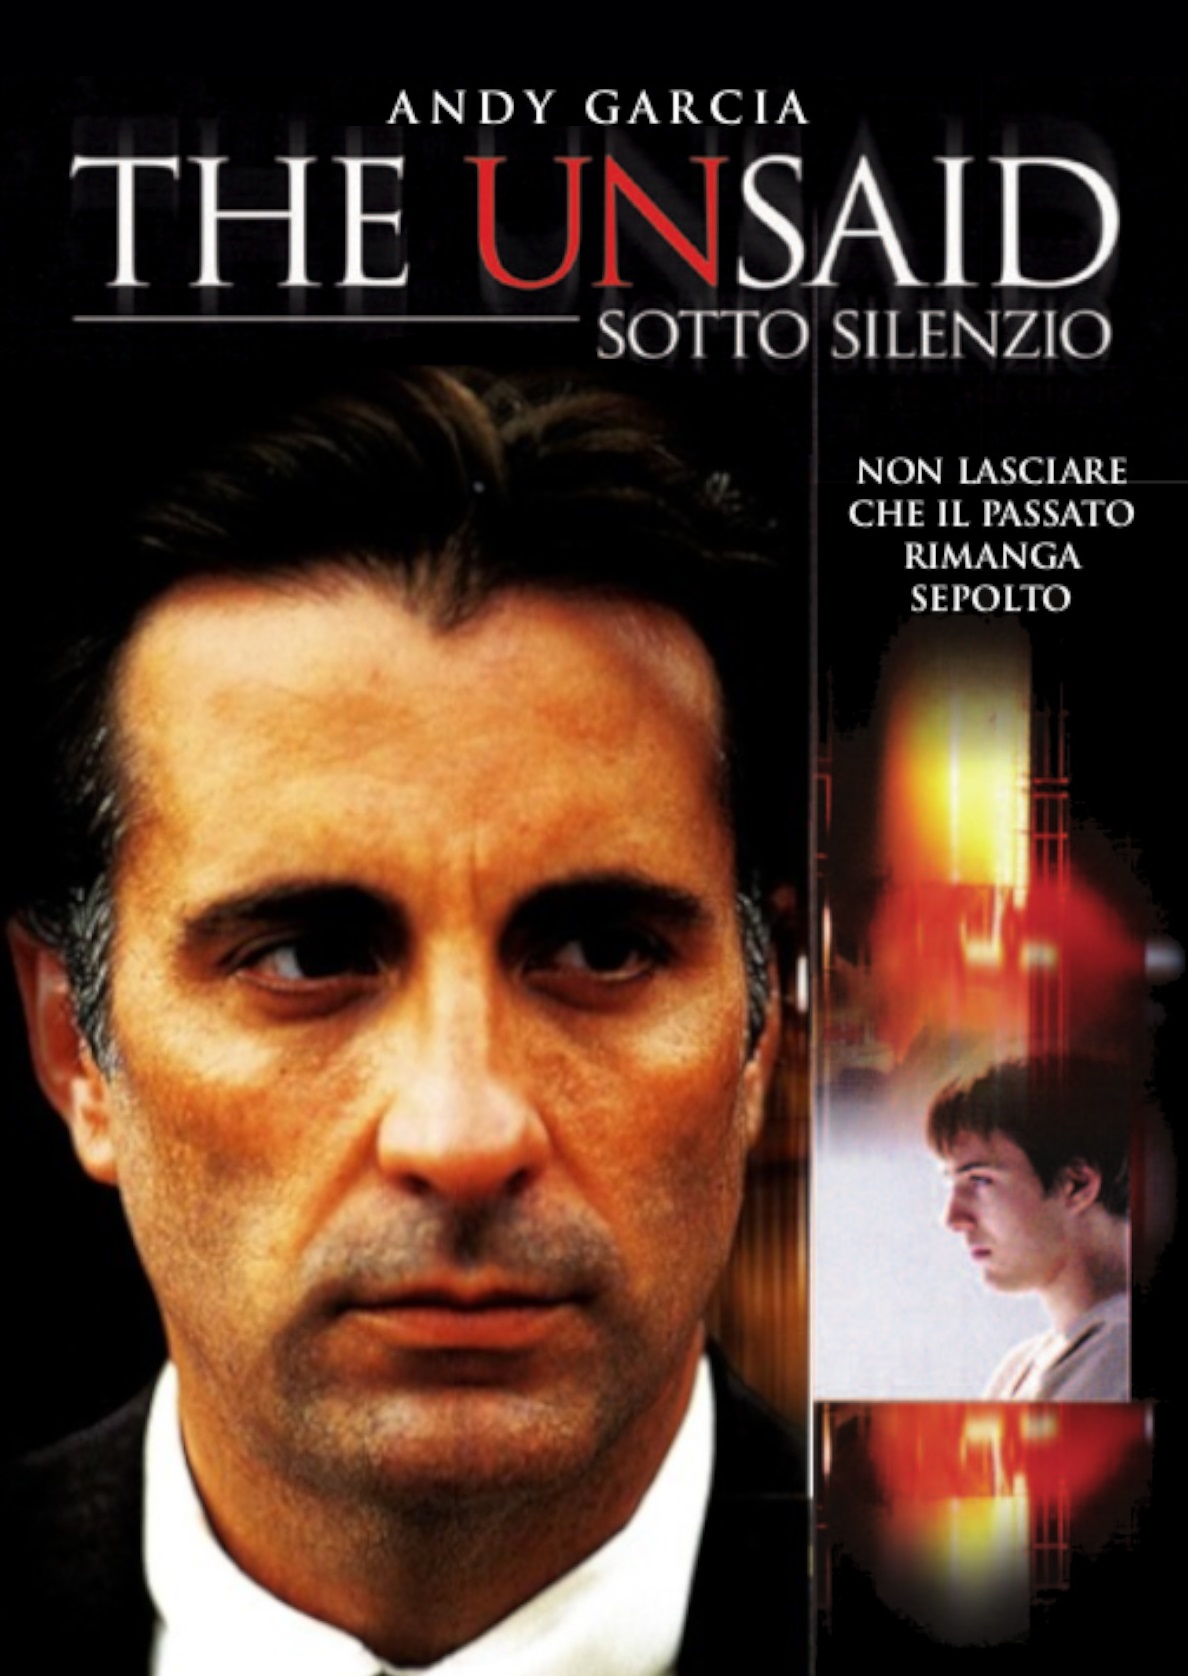 The Unsaid – Sotto silenzio (2001)